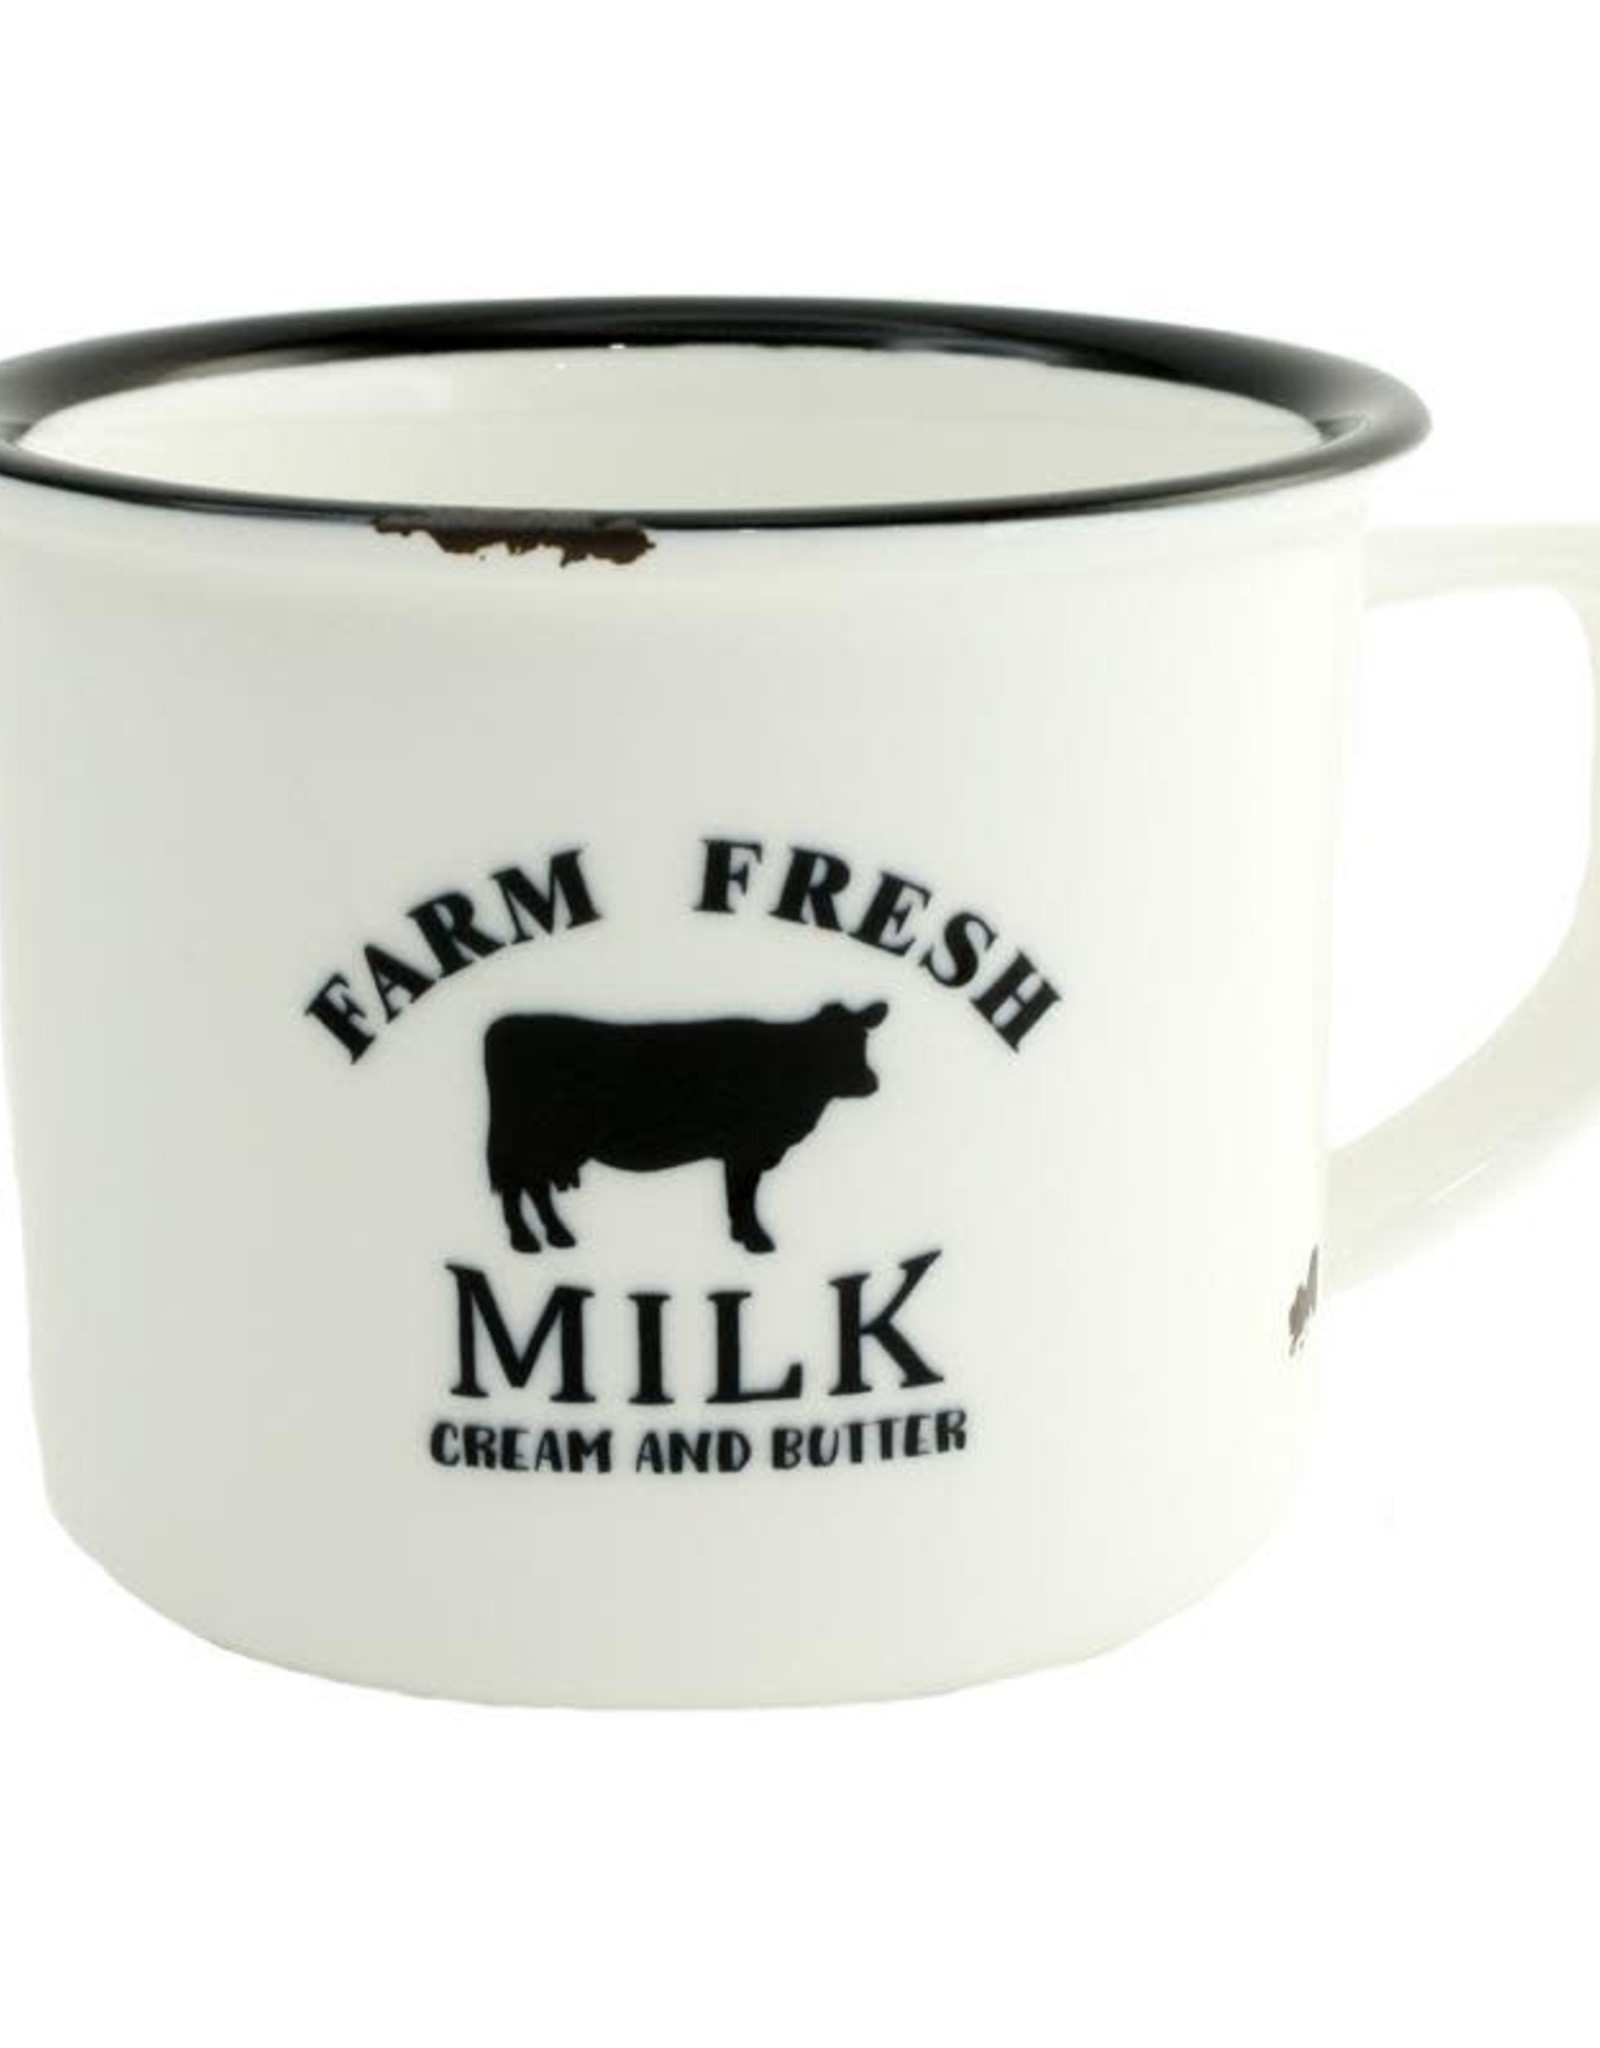 Farm Fresh Mug